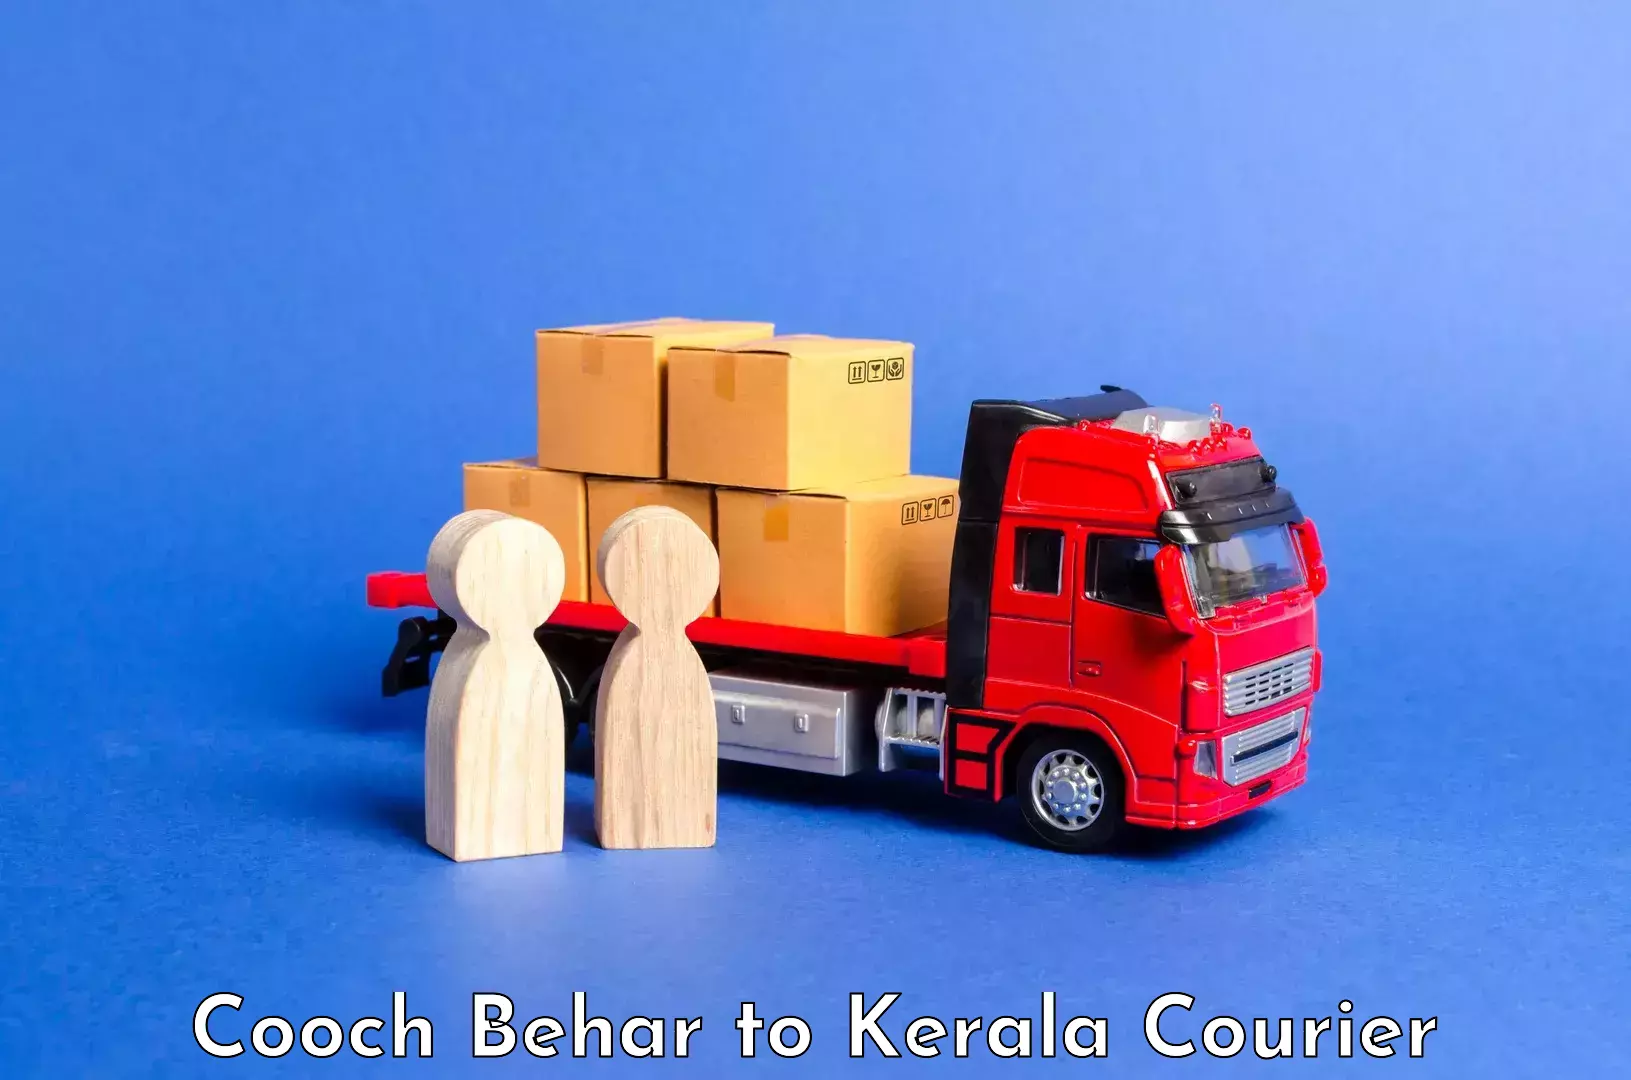 Luggage forwarding service Cooch Behar to Kochi